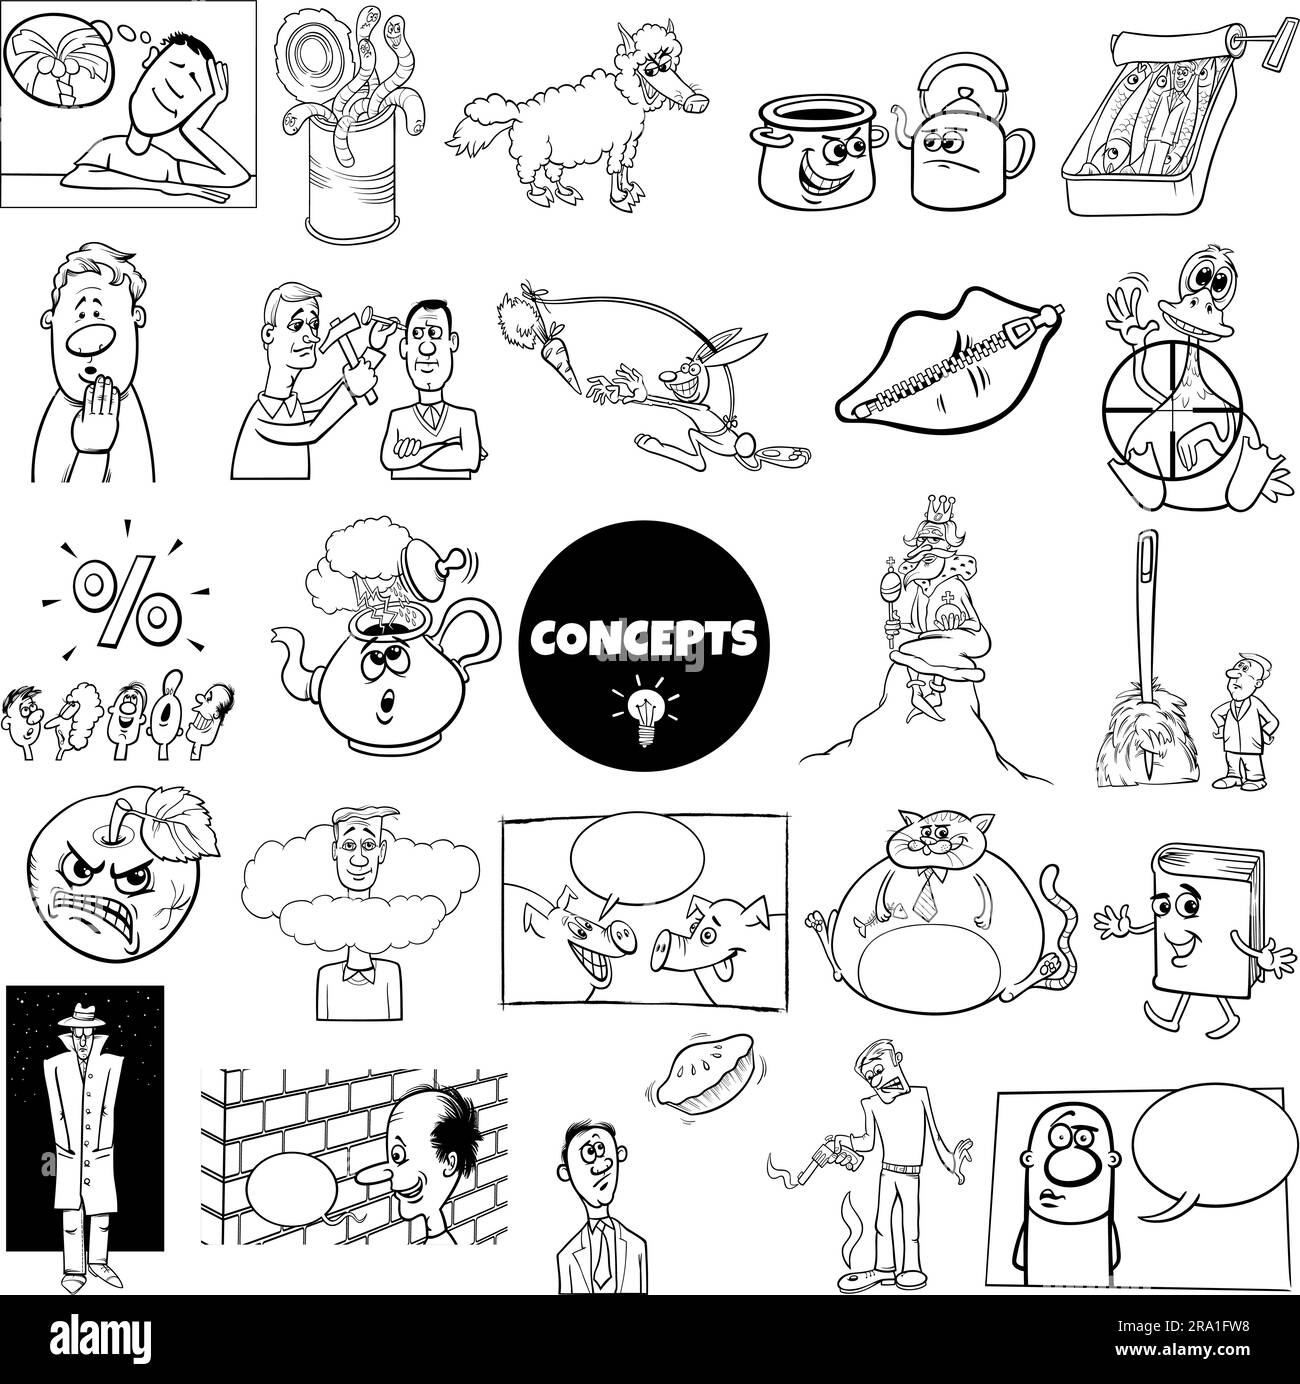 Ensemble d'ilustration noir et blanc de concepts humoristiques de dessins animés ou de métaphores et d'idées avec des personnages comiques Illustration de Vecteur